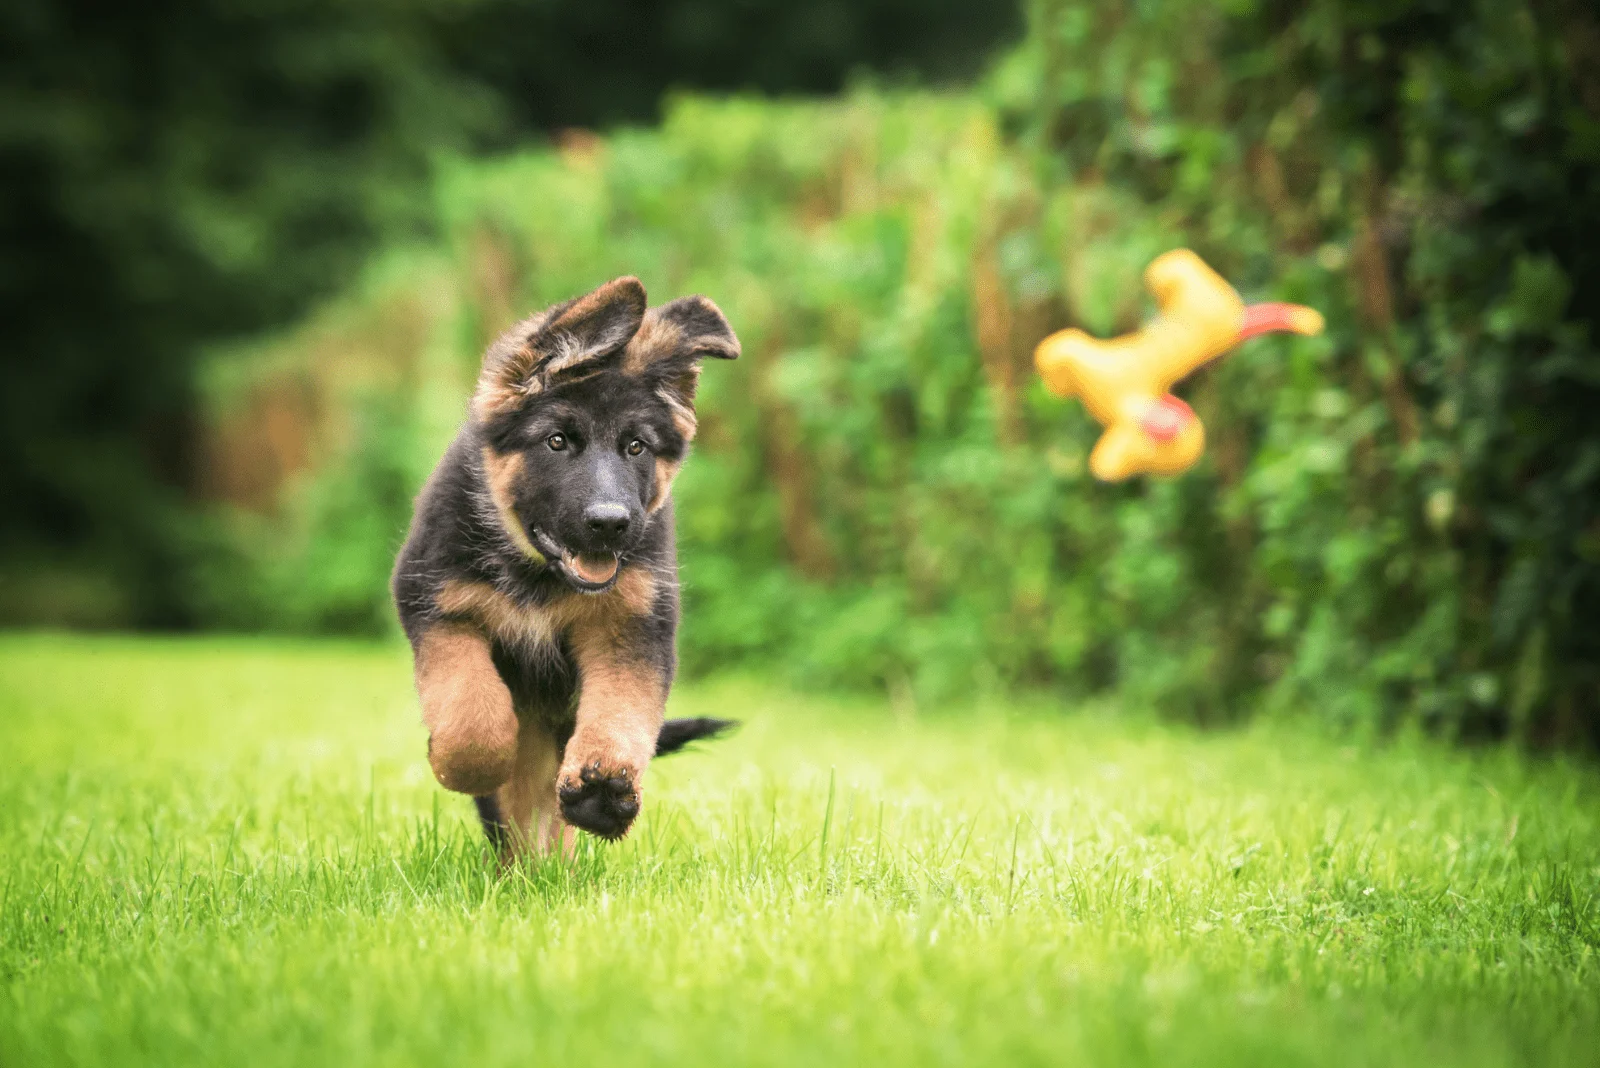 German Shepherd Puppy runs after a toy